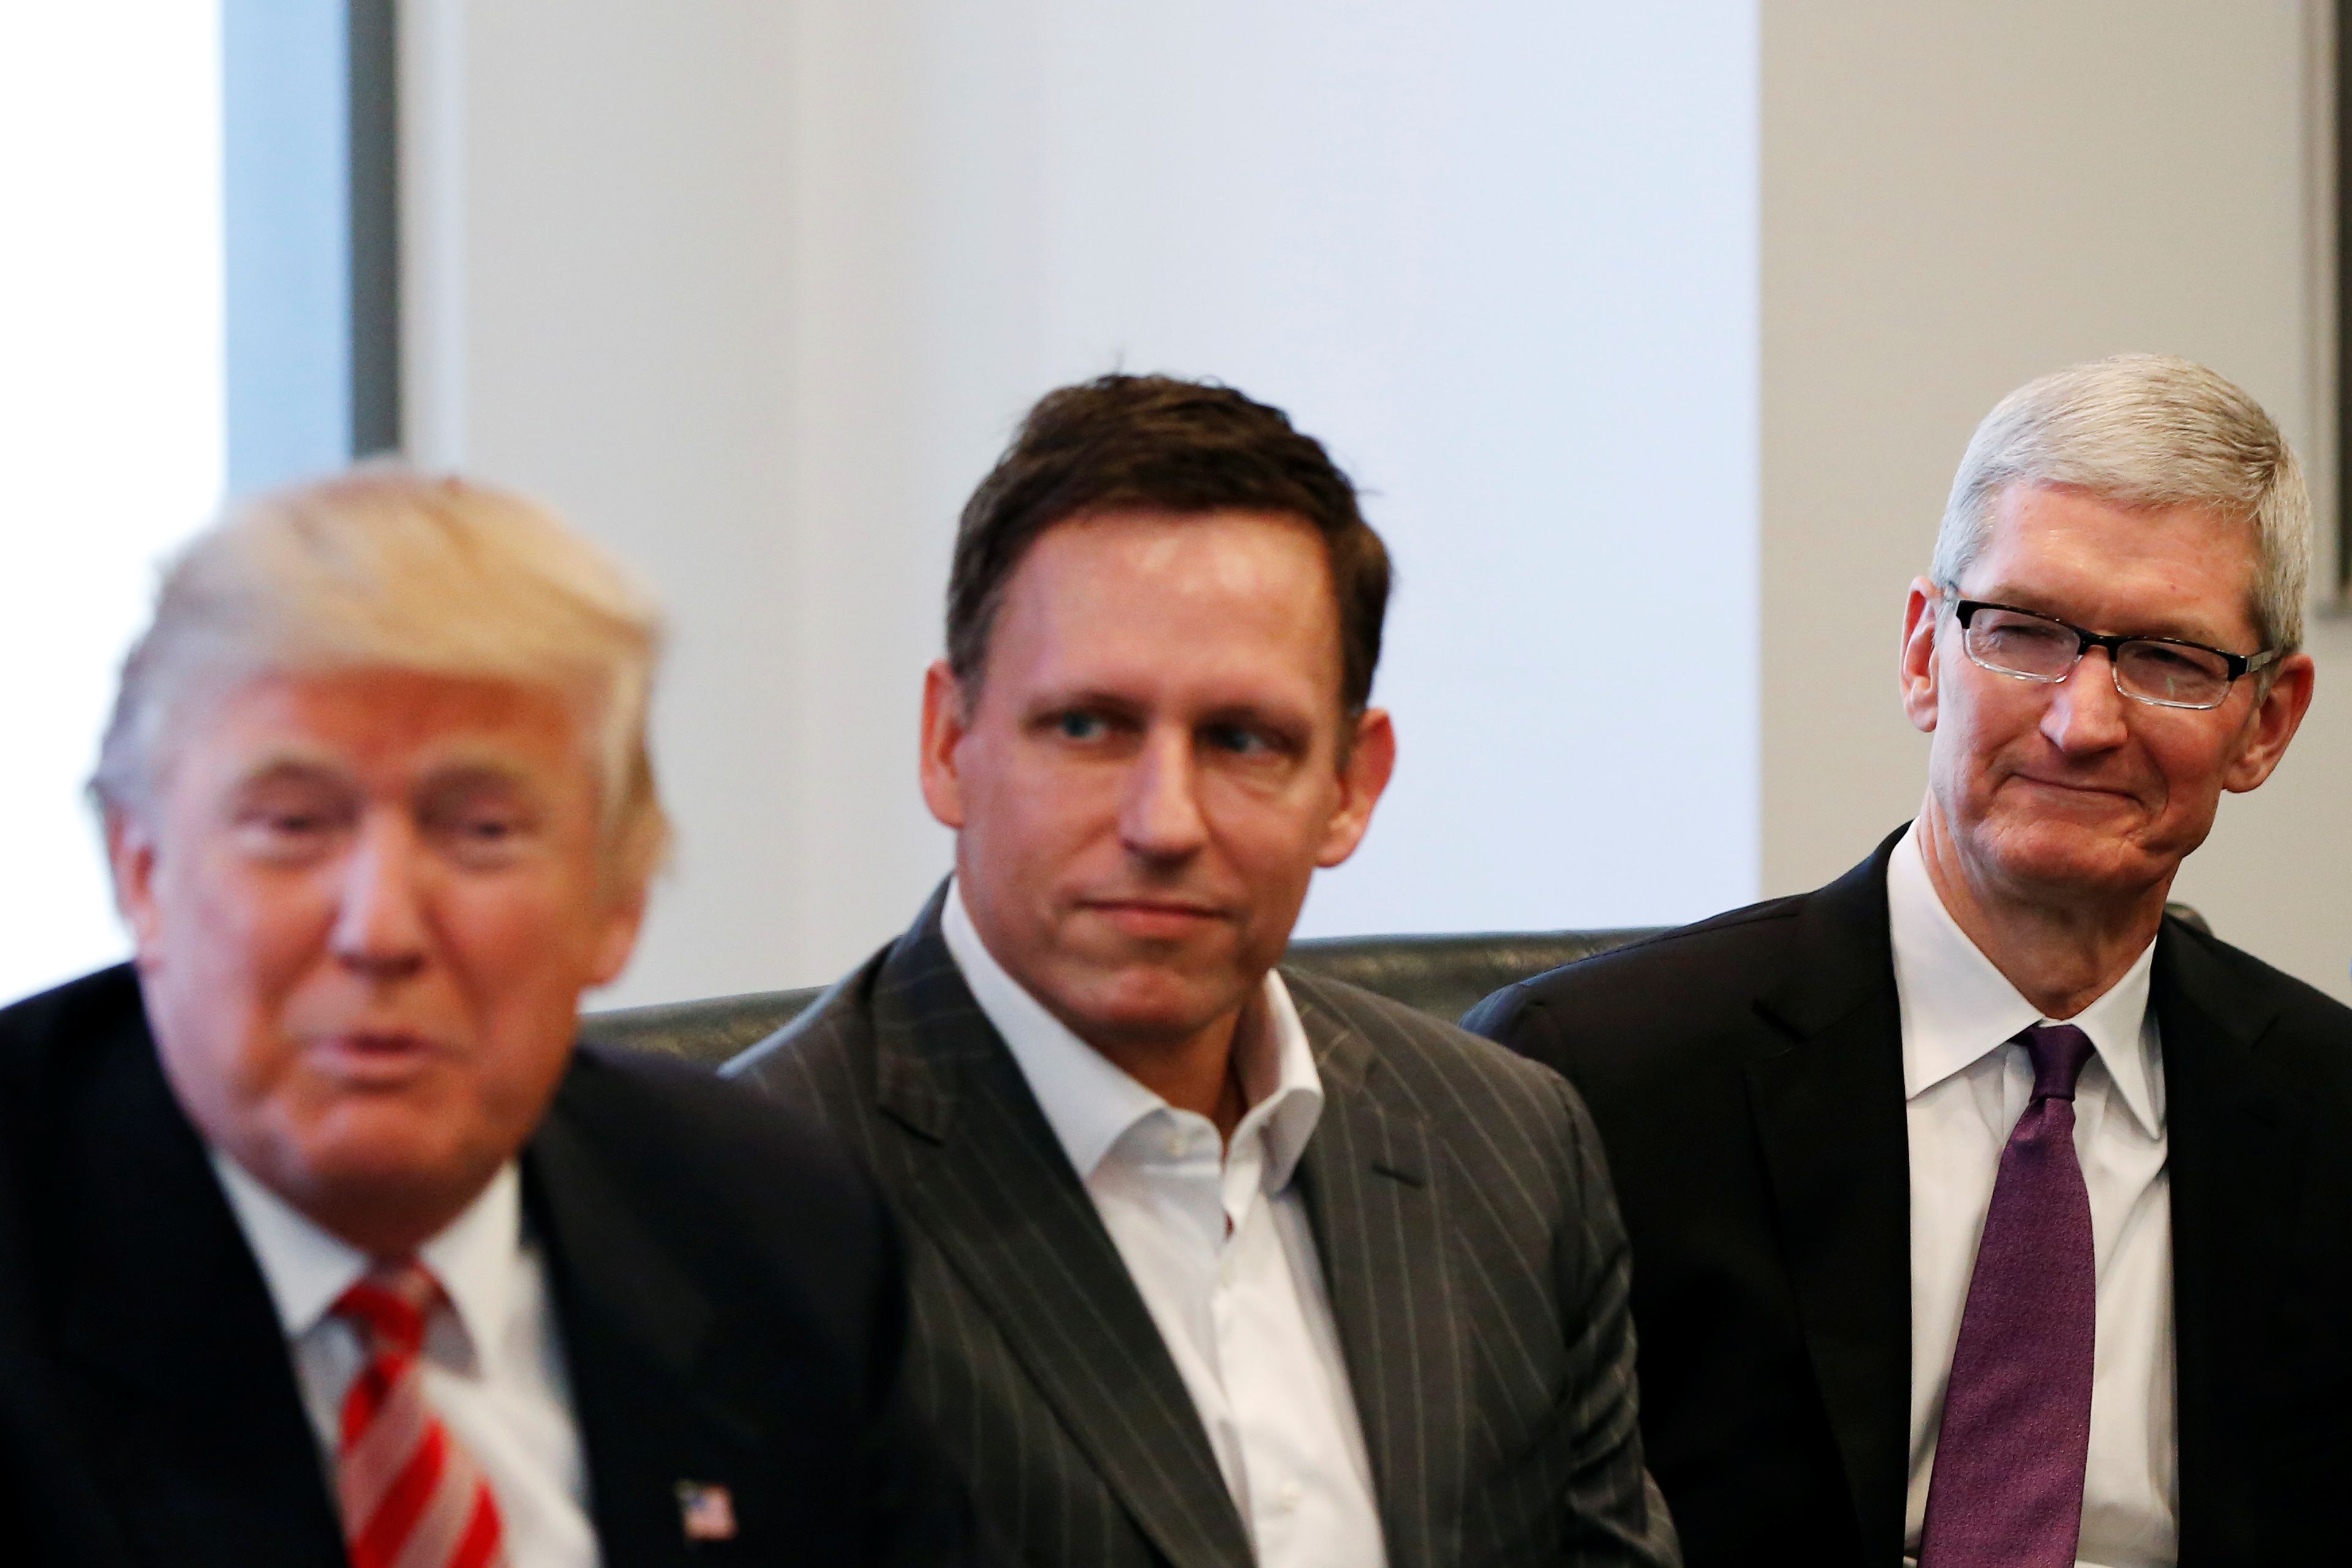 Peter Thiel en el centro, junto con Donald Trump a su izquierda y Tim Cook, CEO de Apple a su derecha.